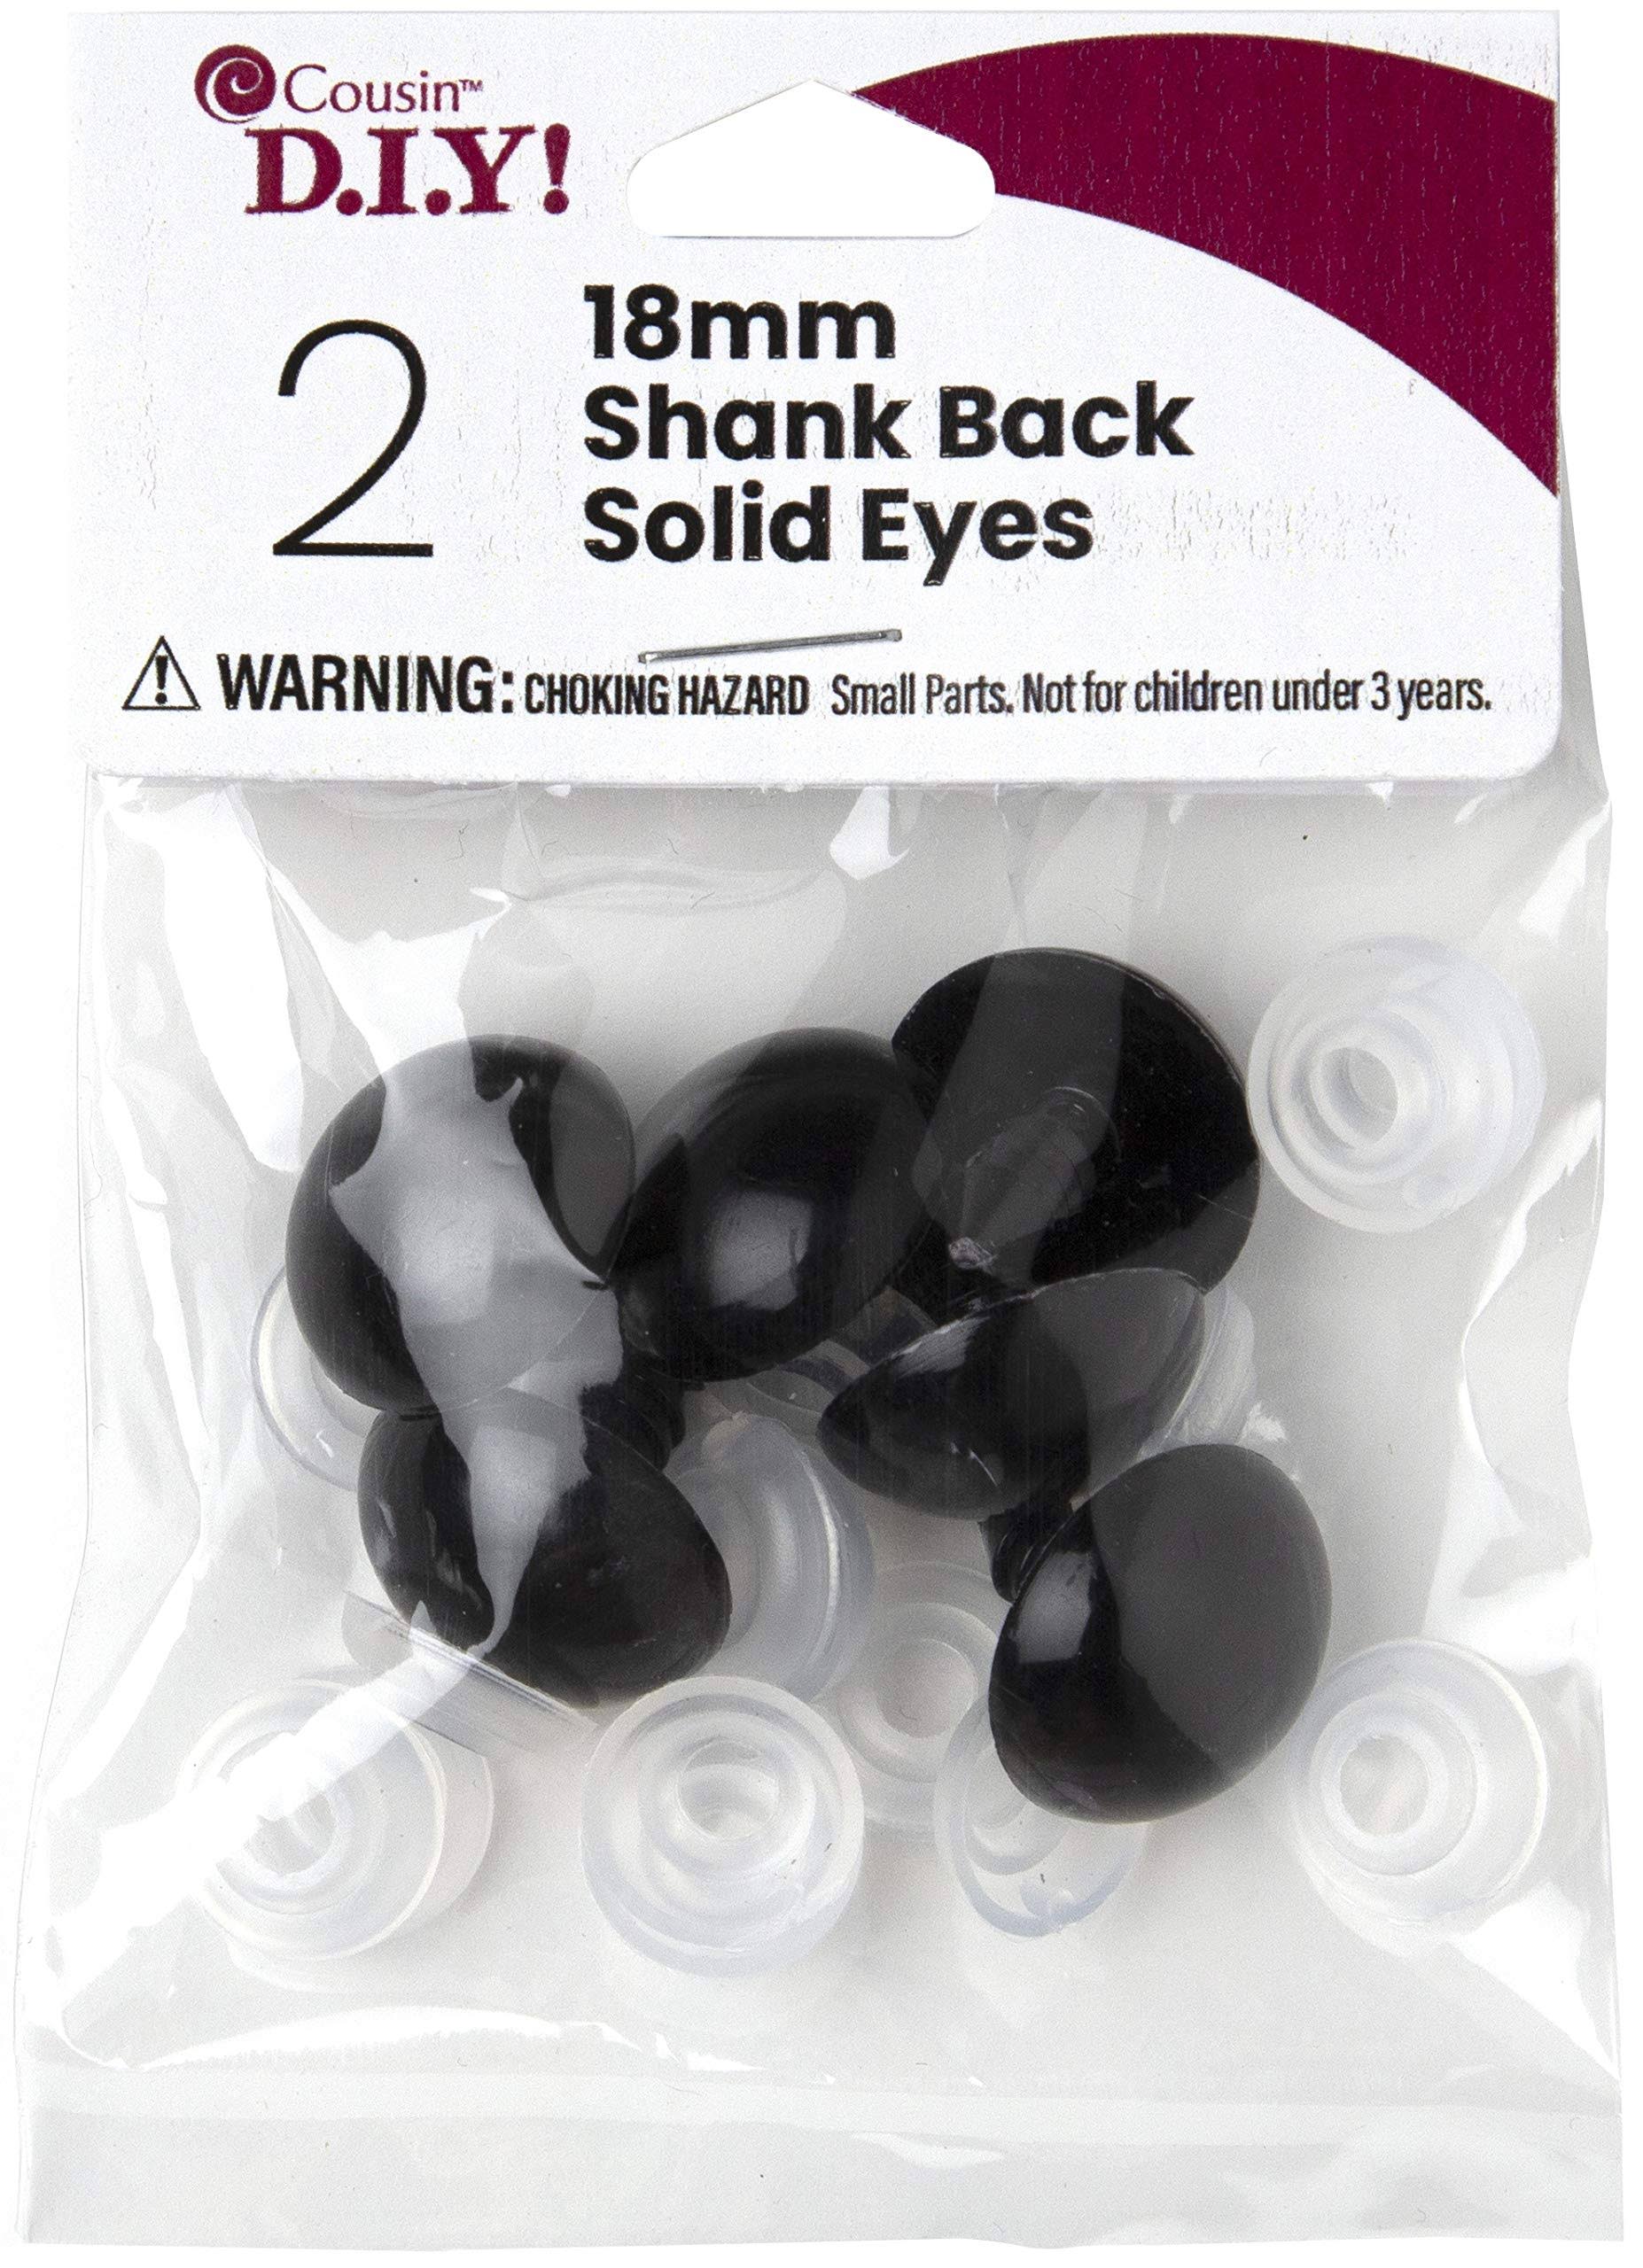 Shank Back Solid Eyes 18mm 2/pkg-black -40000425 Cousin